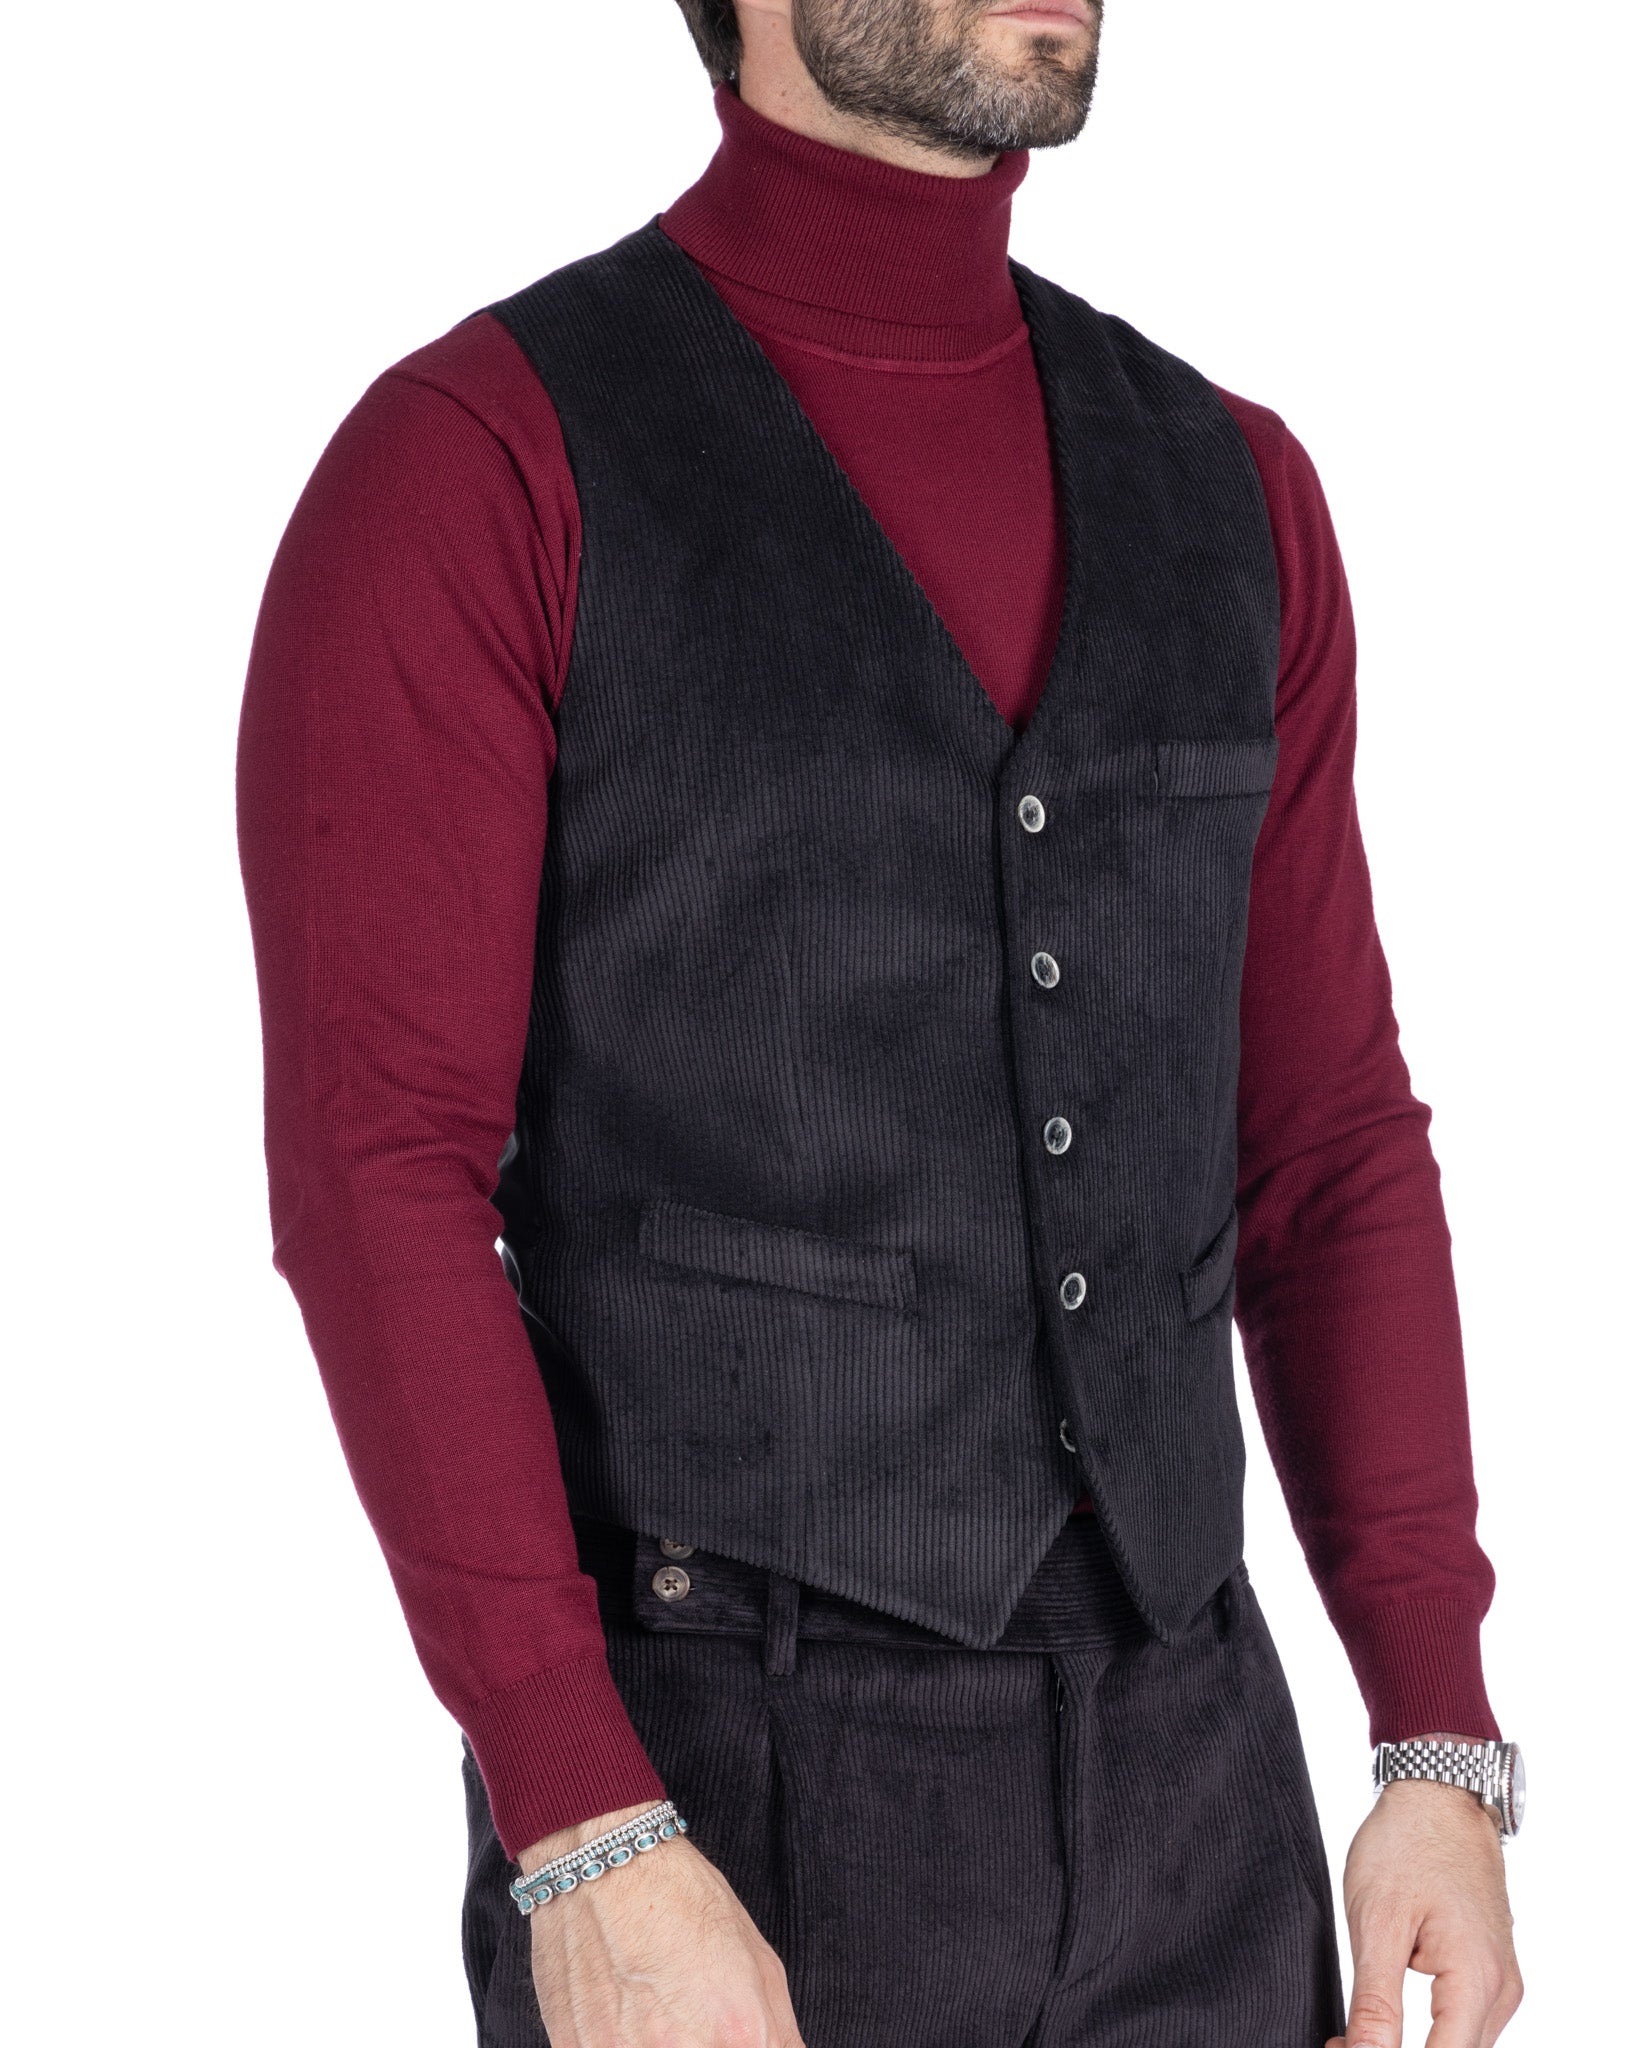 Mads - black velvet waistcoat